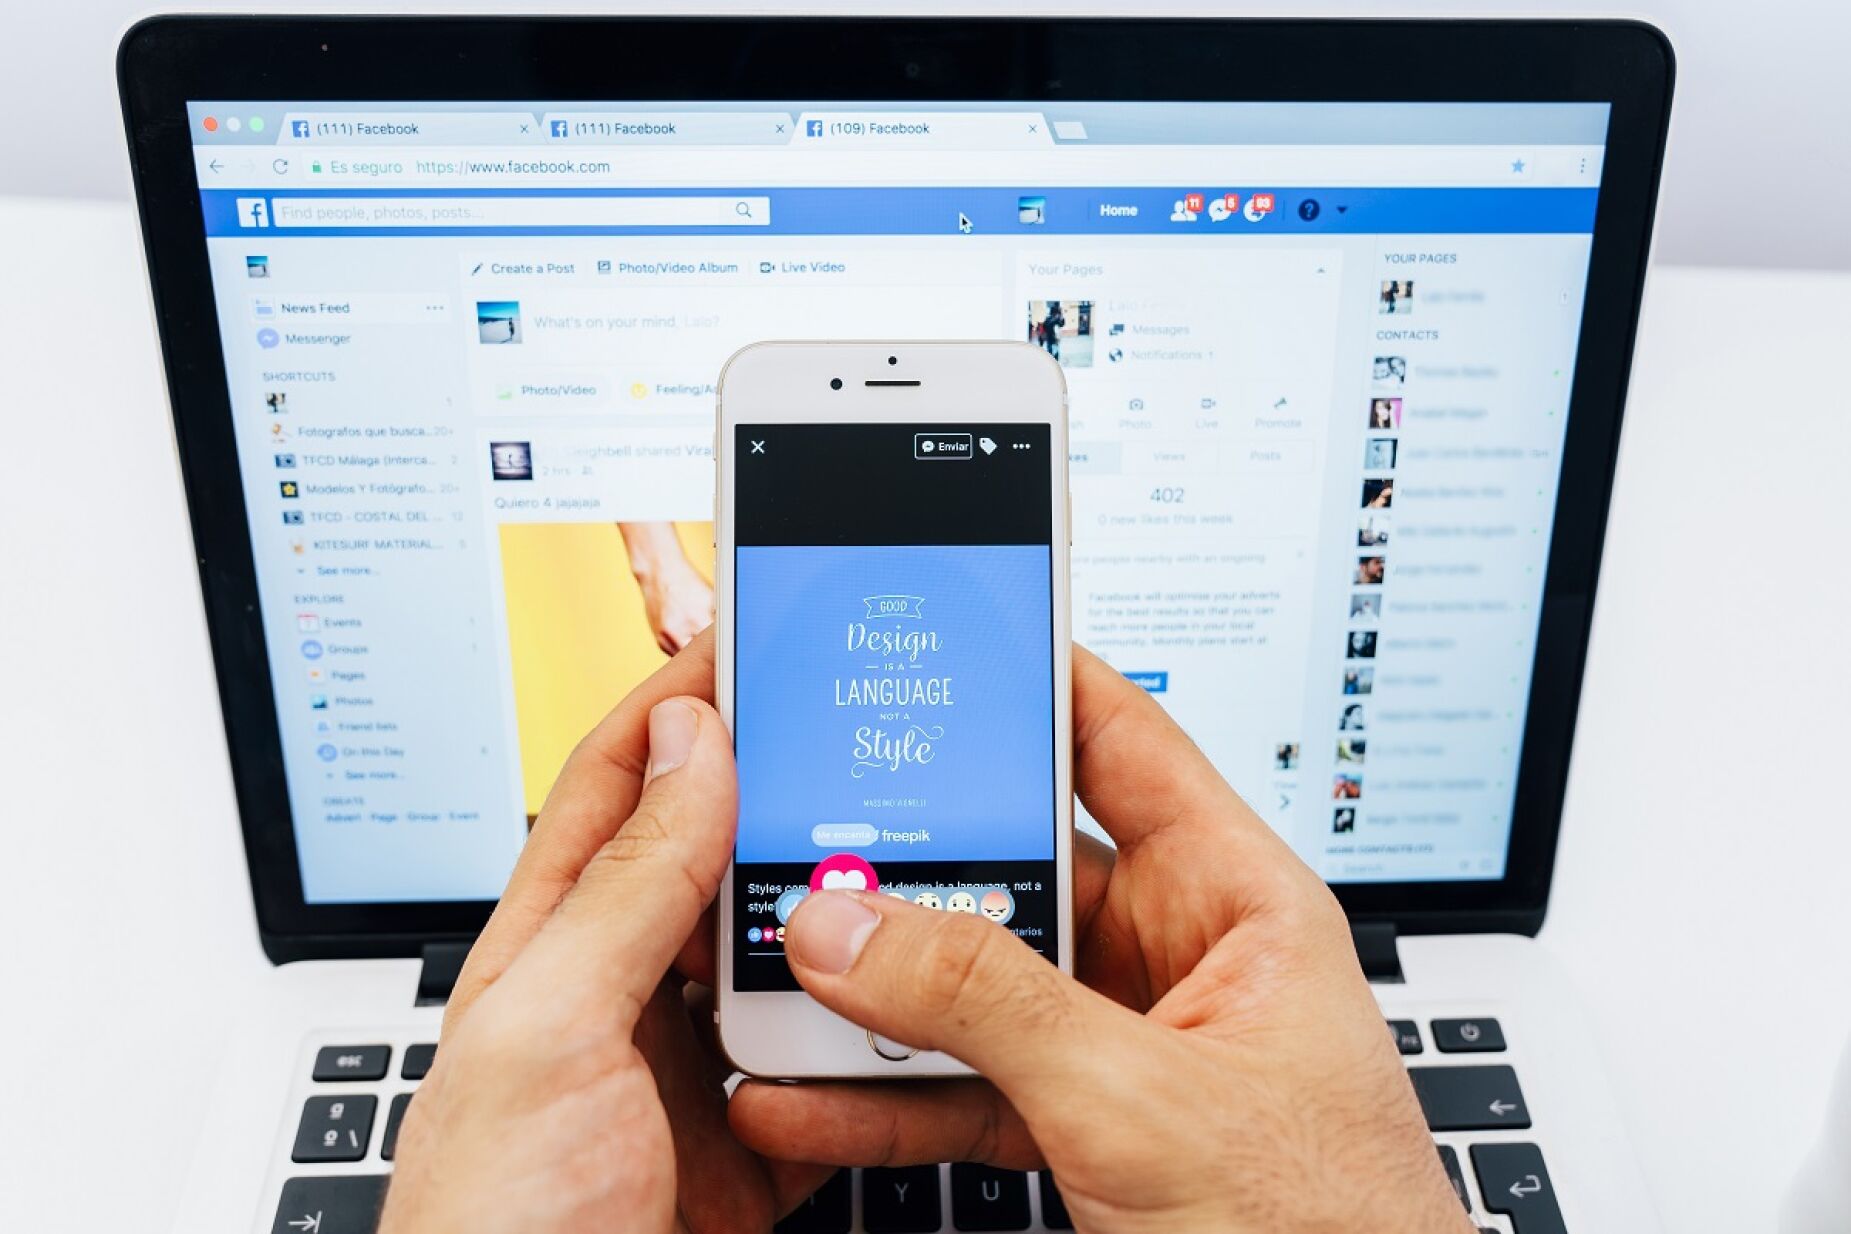 Instagram e Facebook terão login integrado e alternância rápida entre  perfis - Canaltech